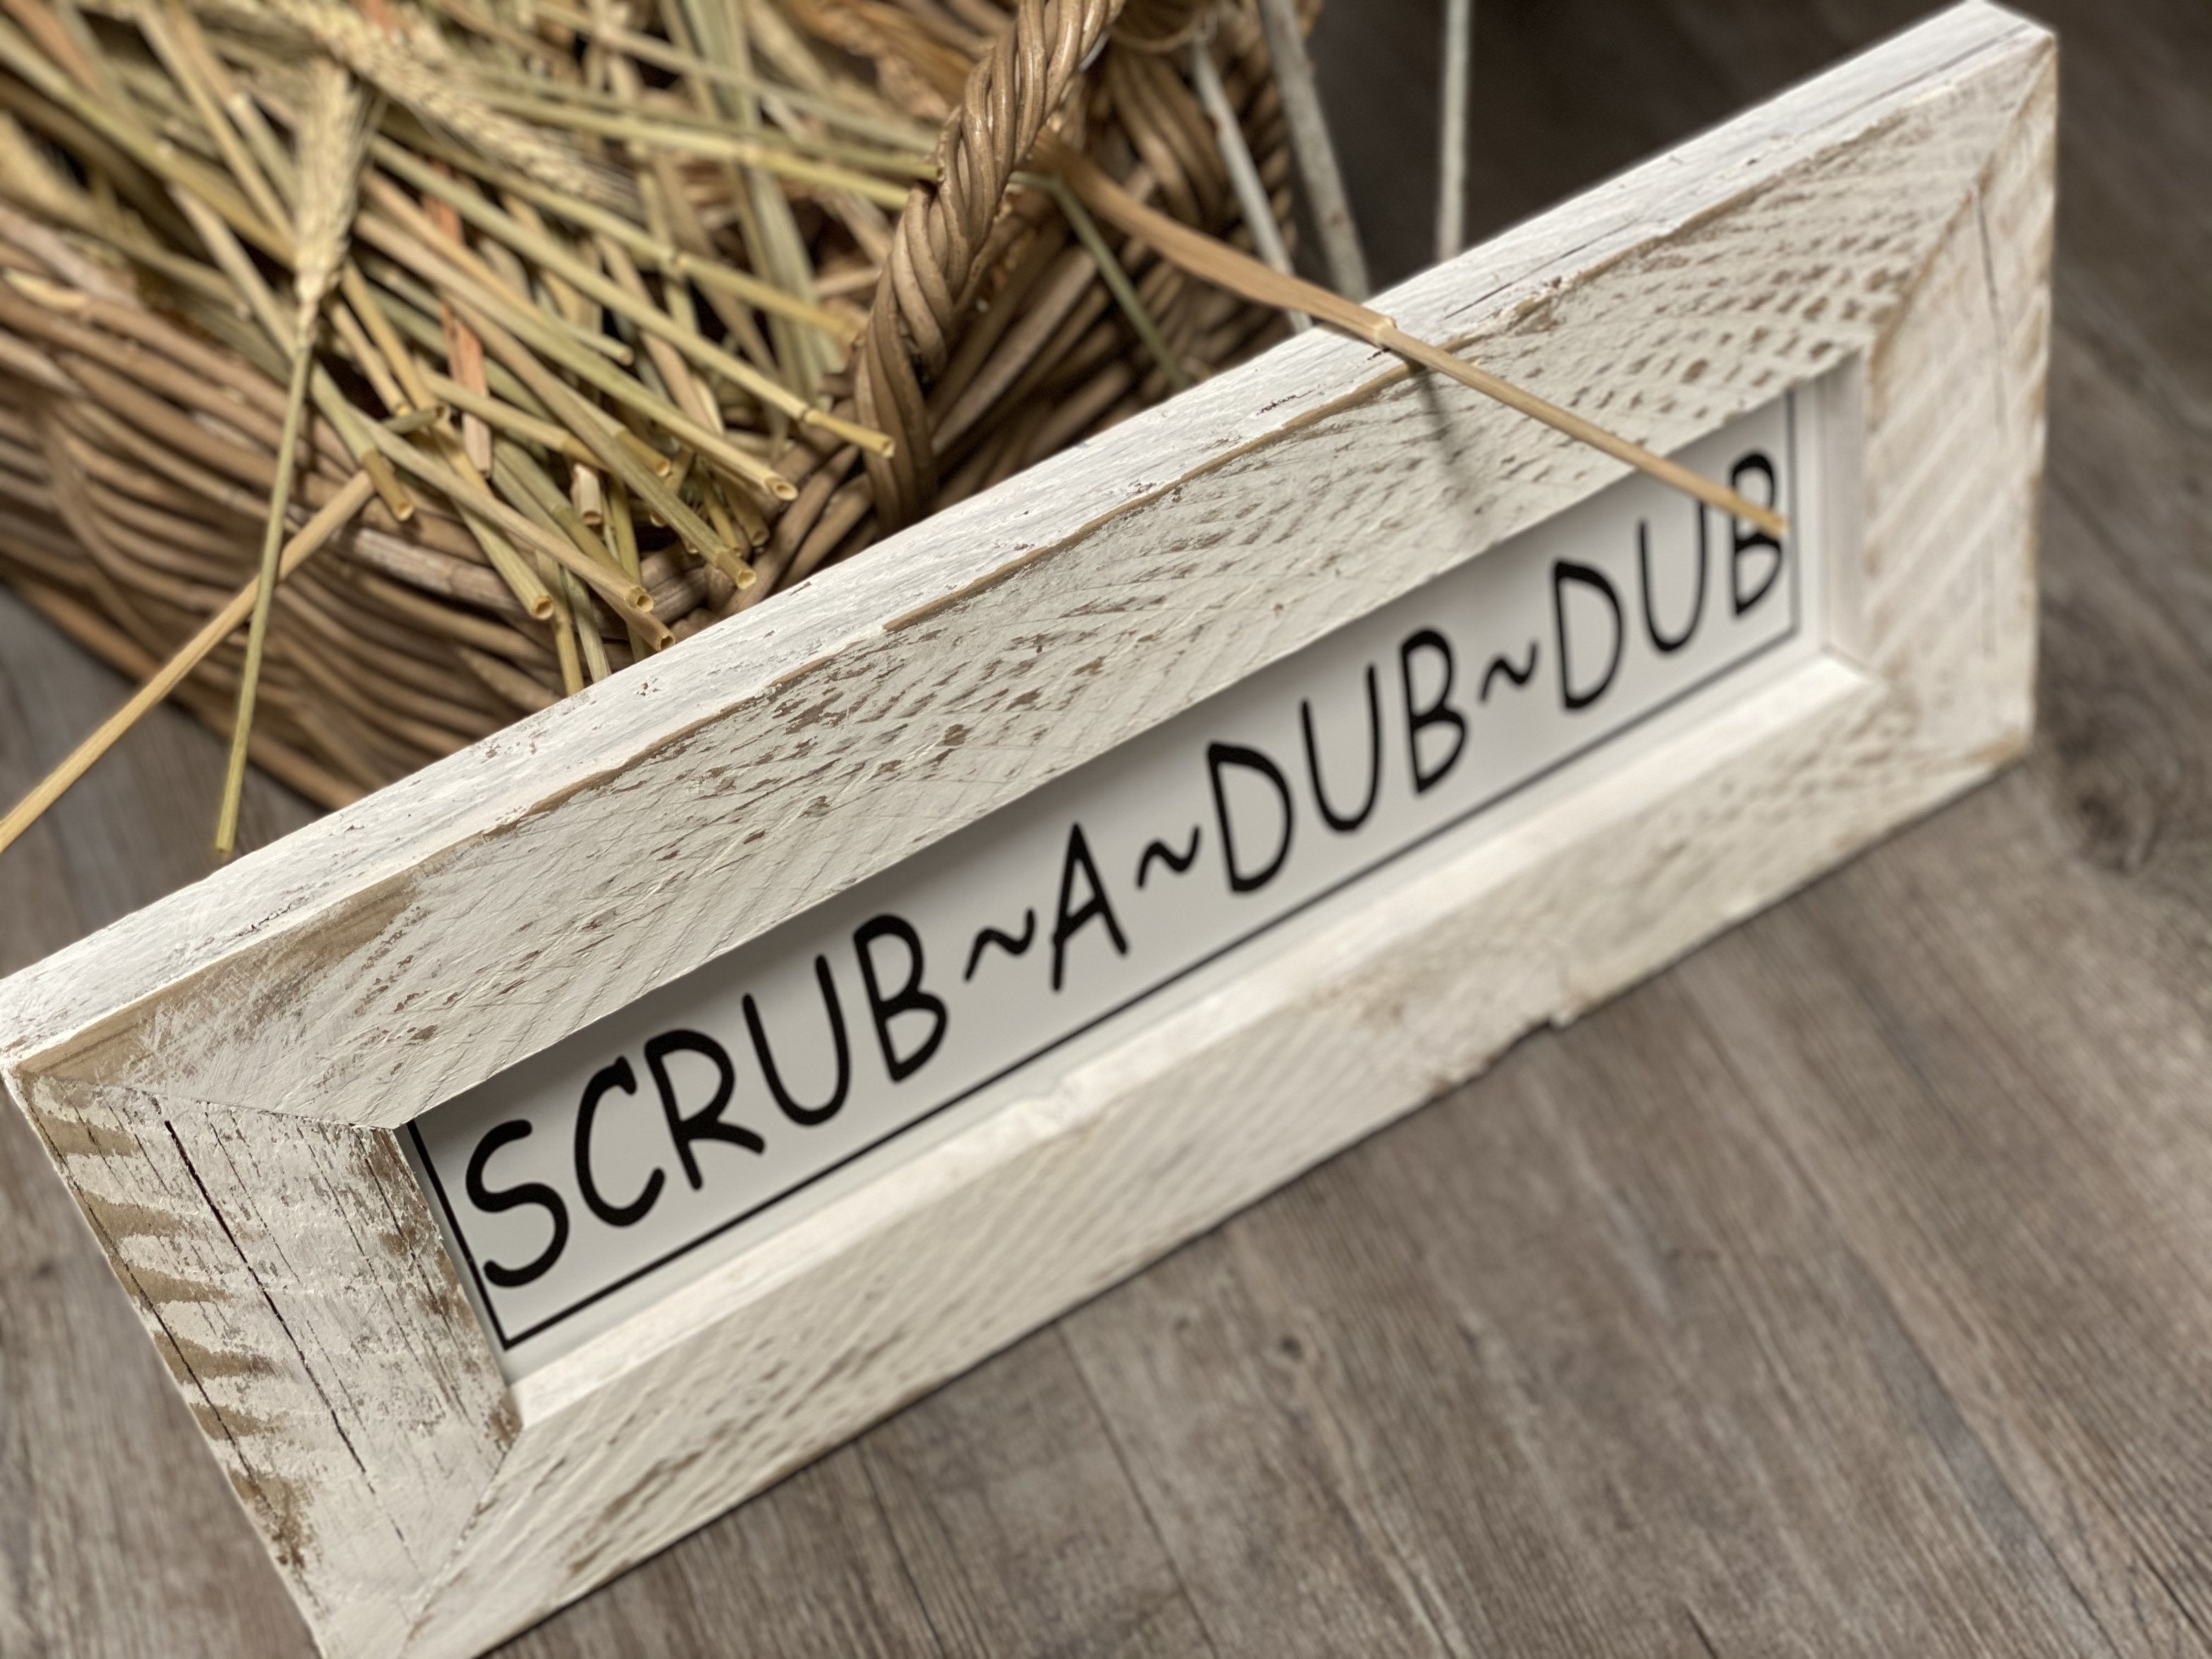 Scrub a Dub Dub Handmade Sign